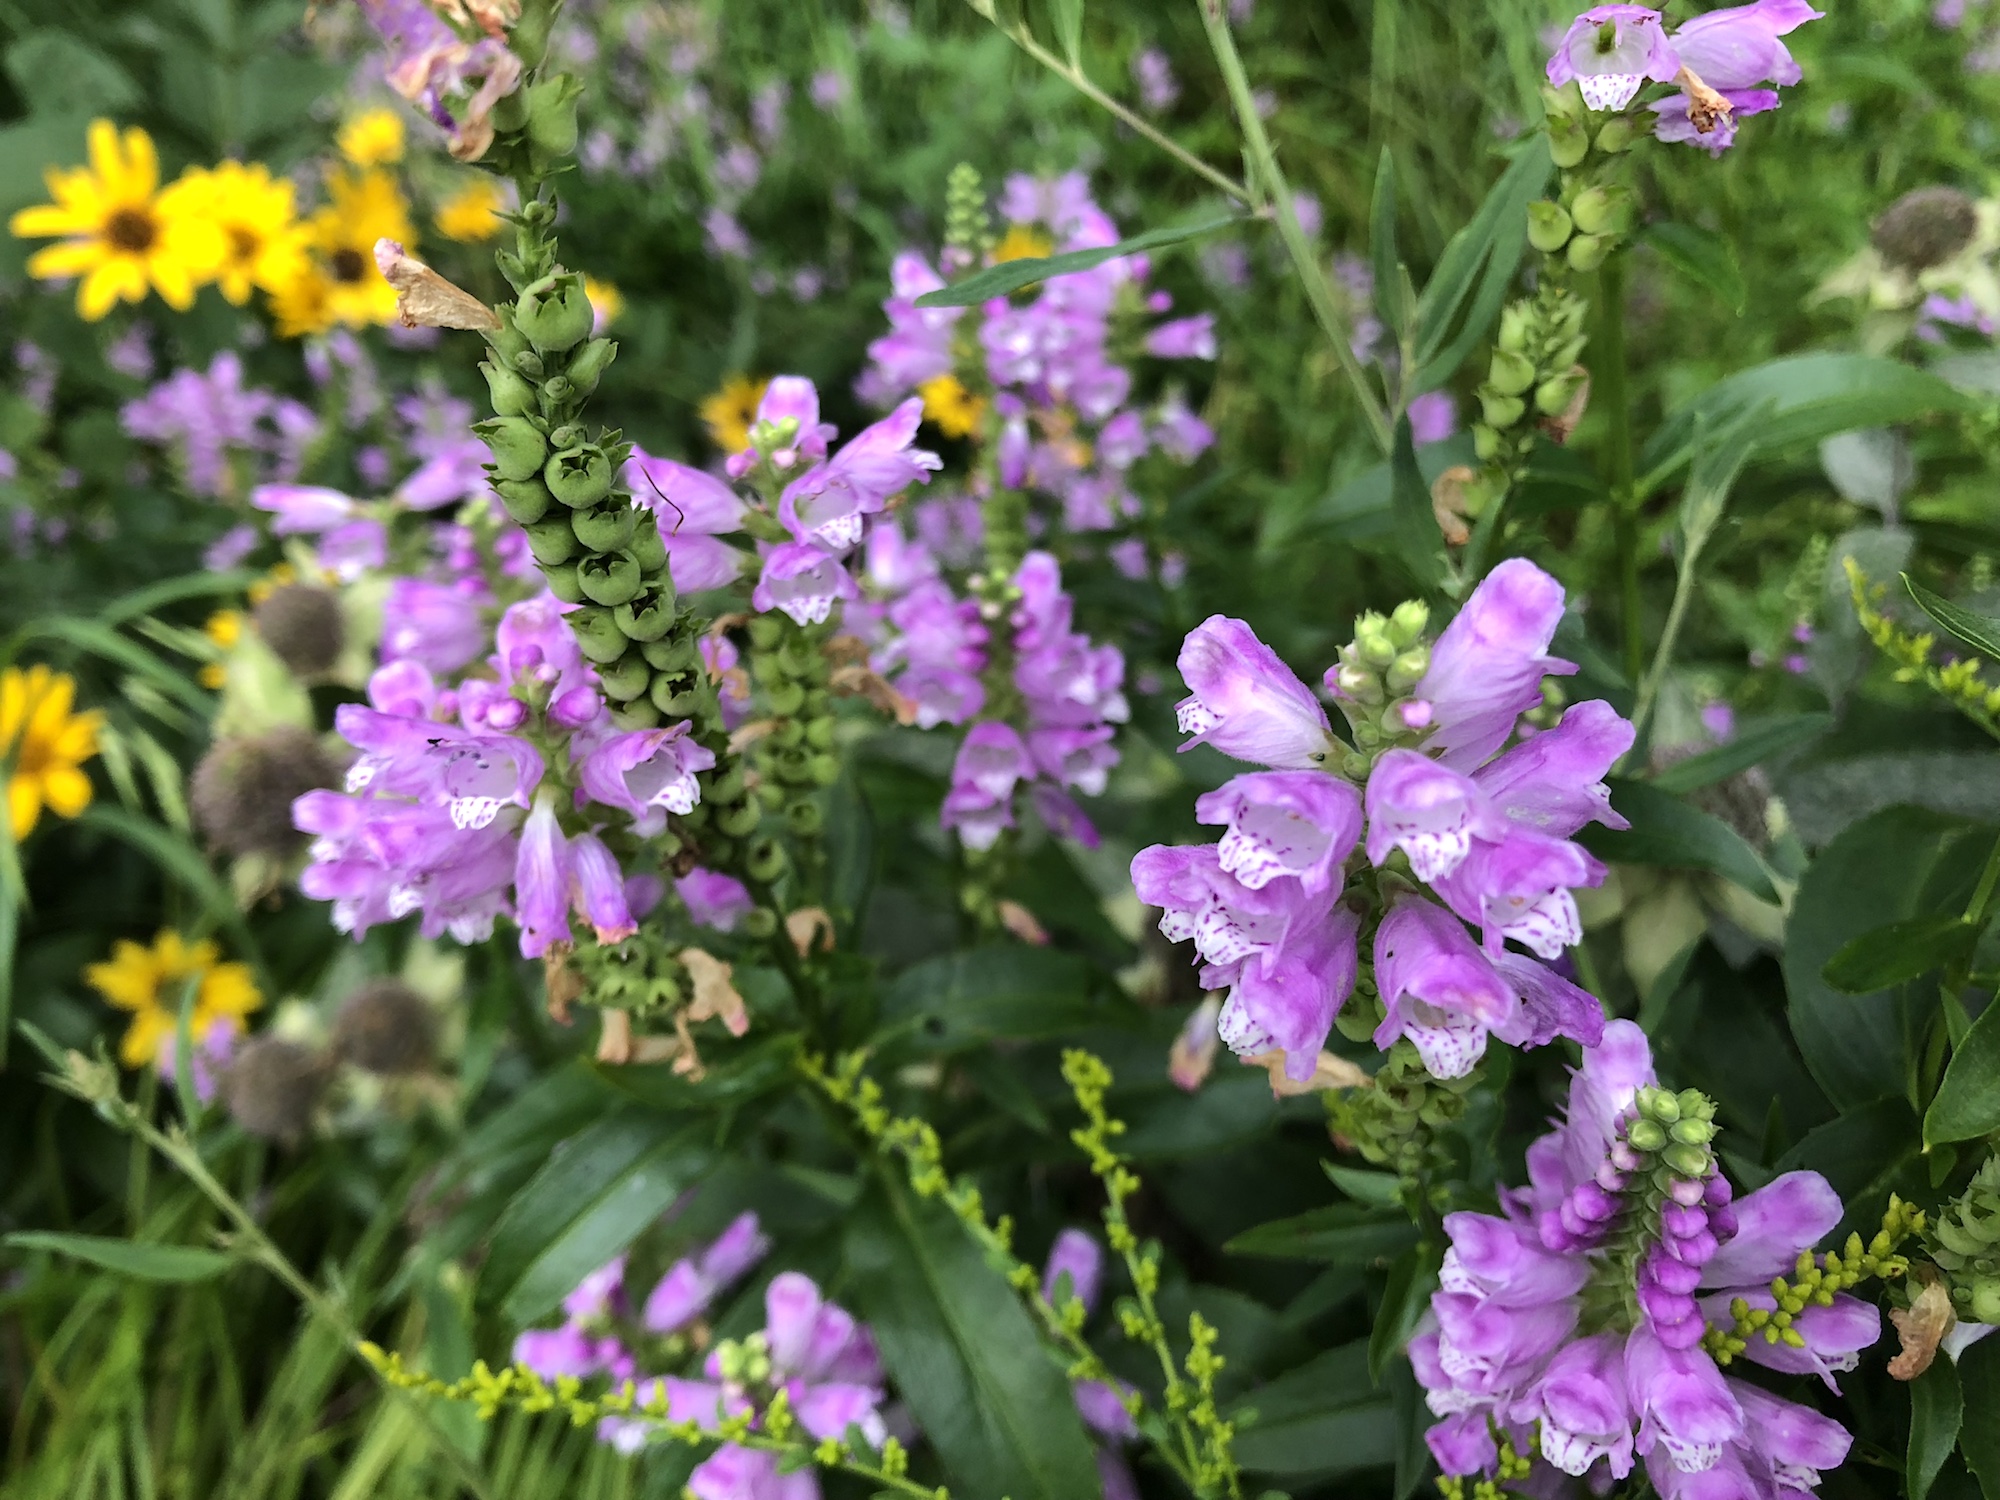 Obedient Plant in Thoreau rain garden on August 15, 2018.